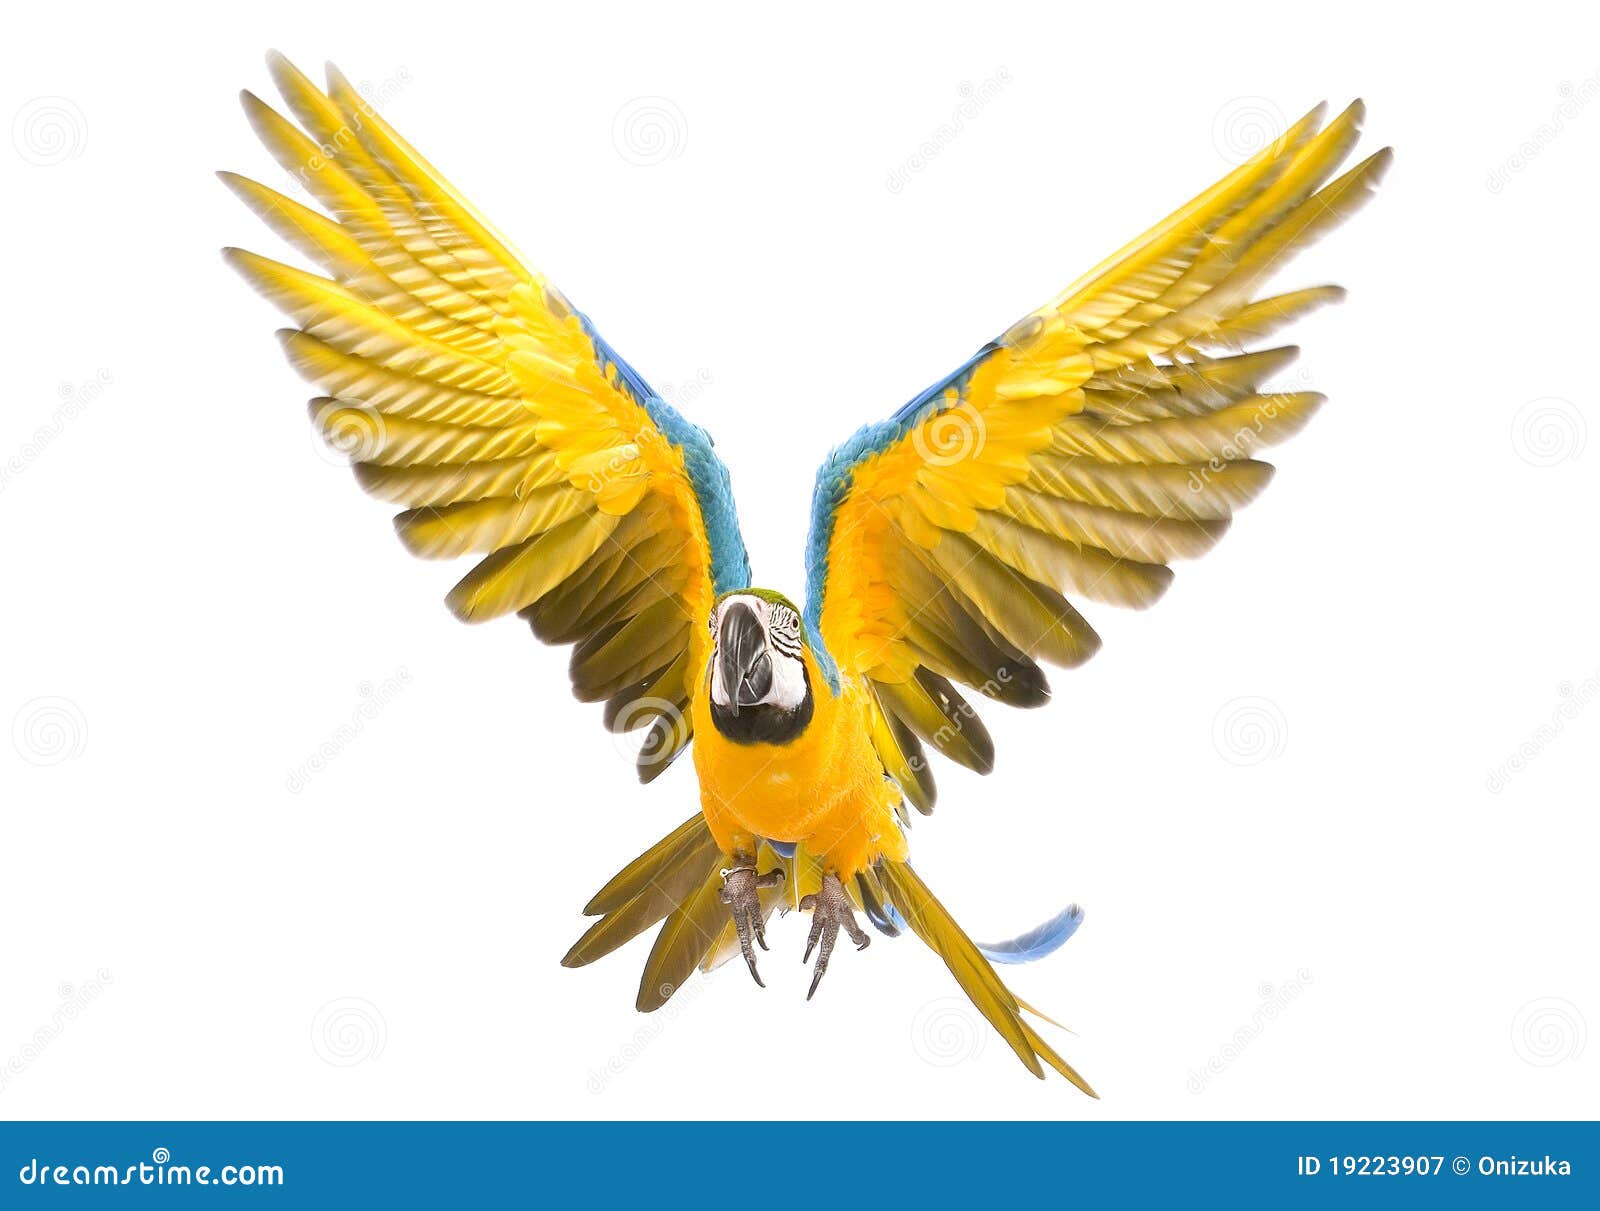 bright ara parrot flying